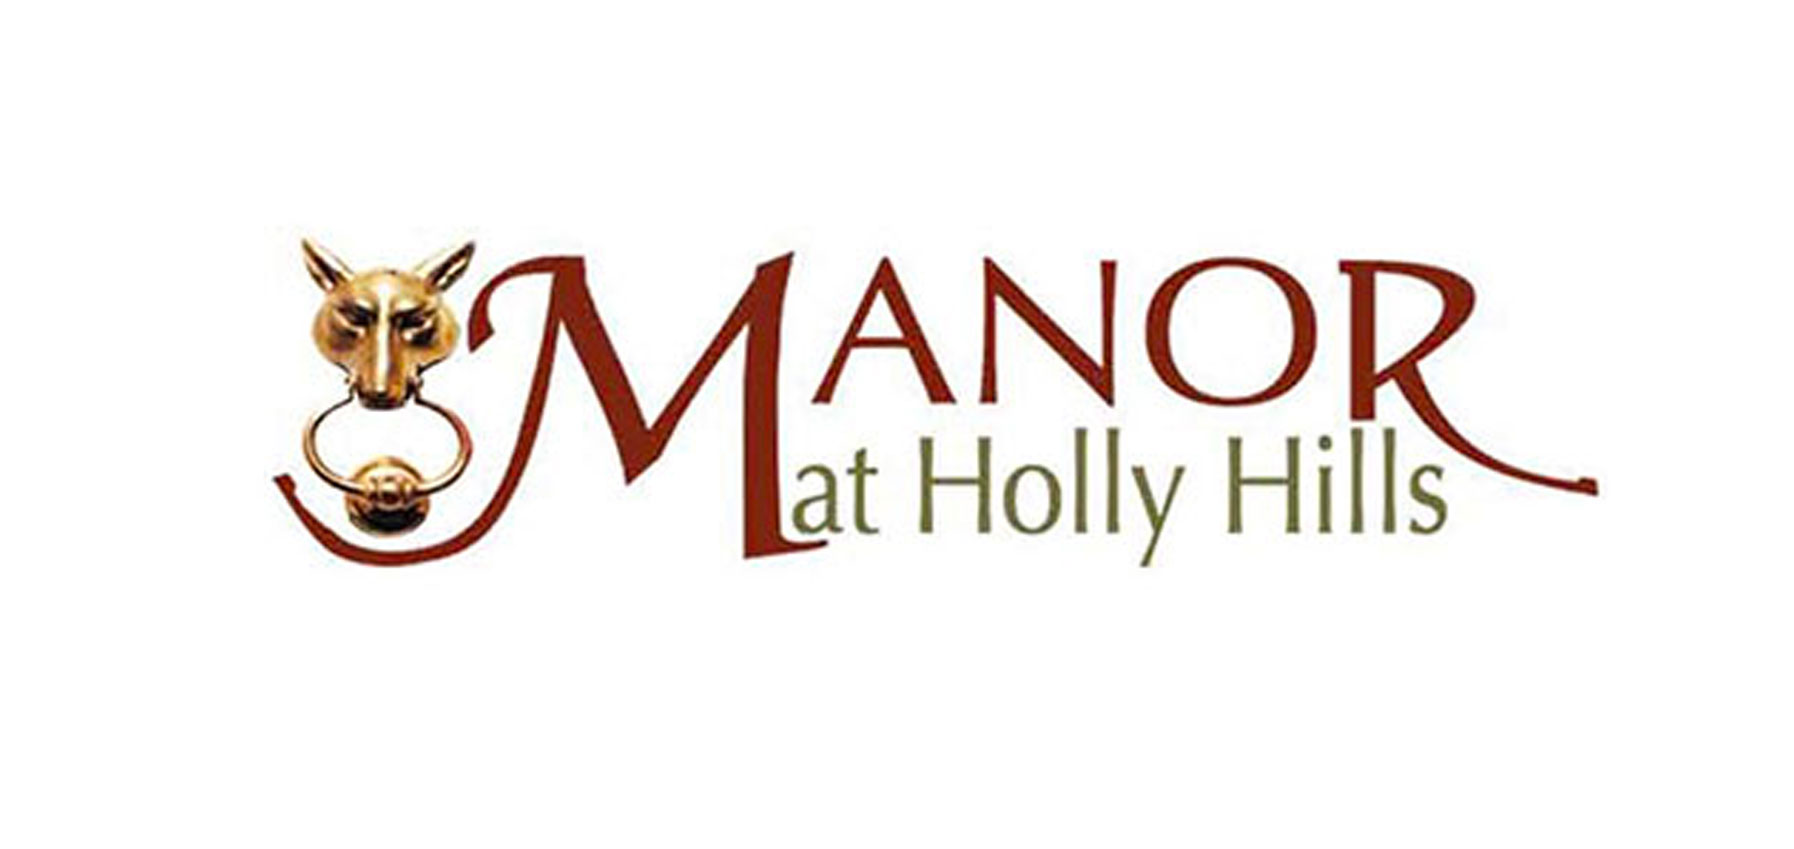 Manor at Holly Hills logo, shows ornate door knocker